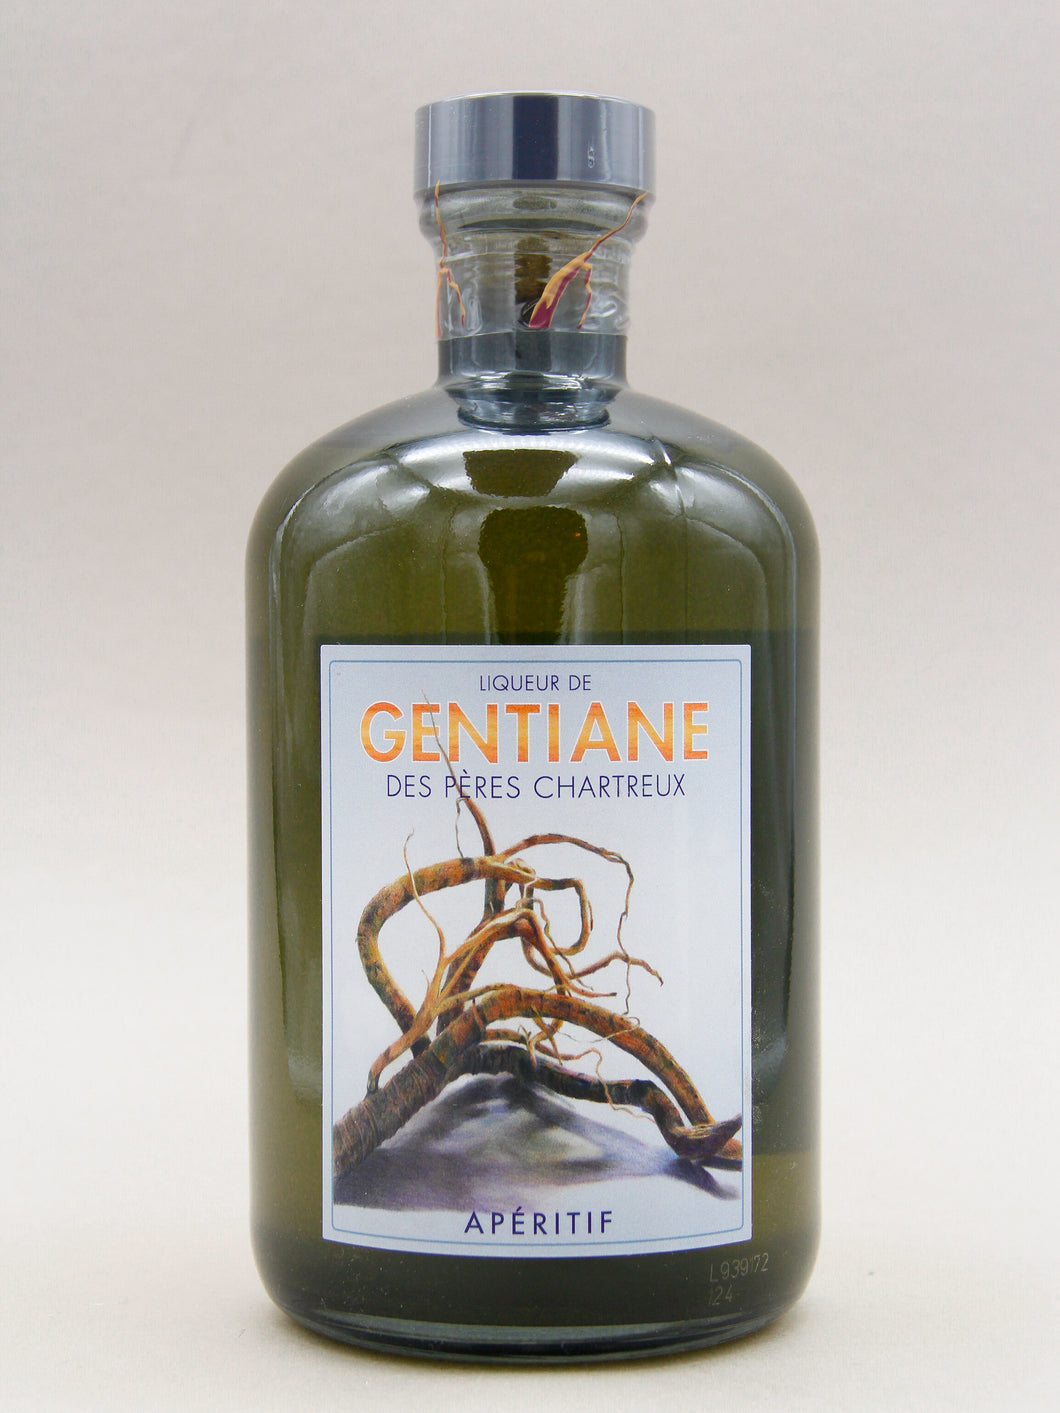 Chartreuse Gentiane, Liqueur, France (22.7%, 100cl)